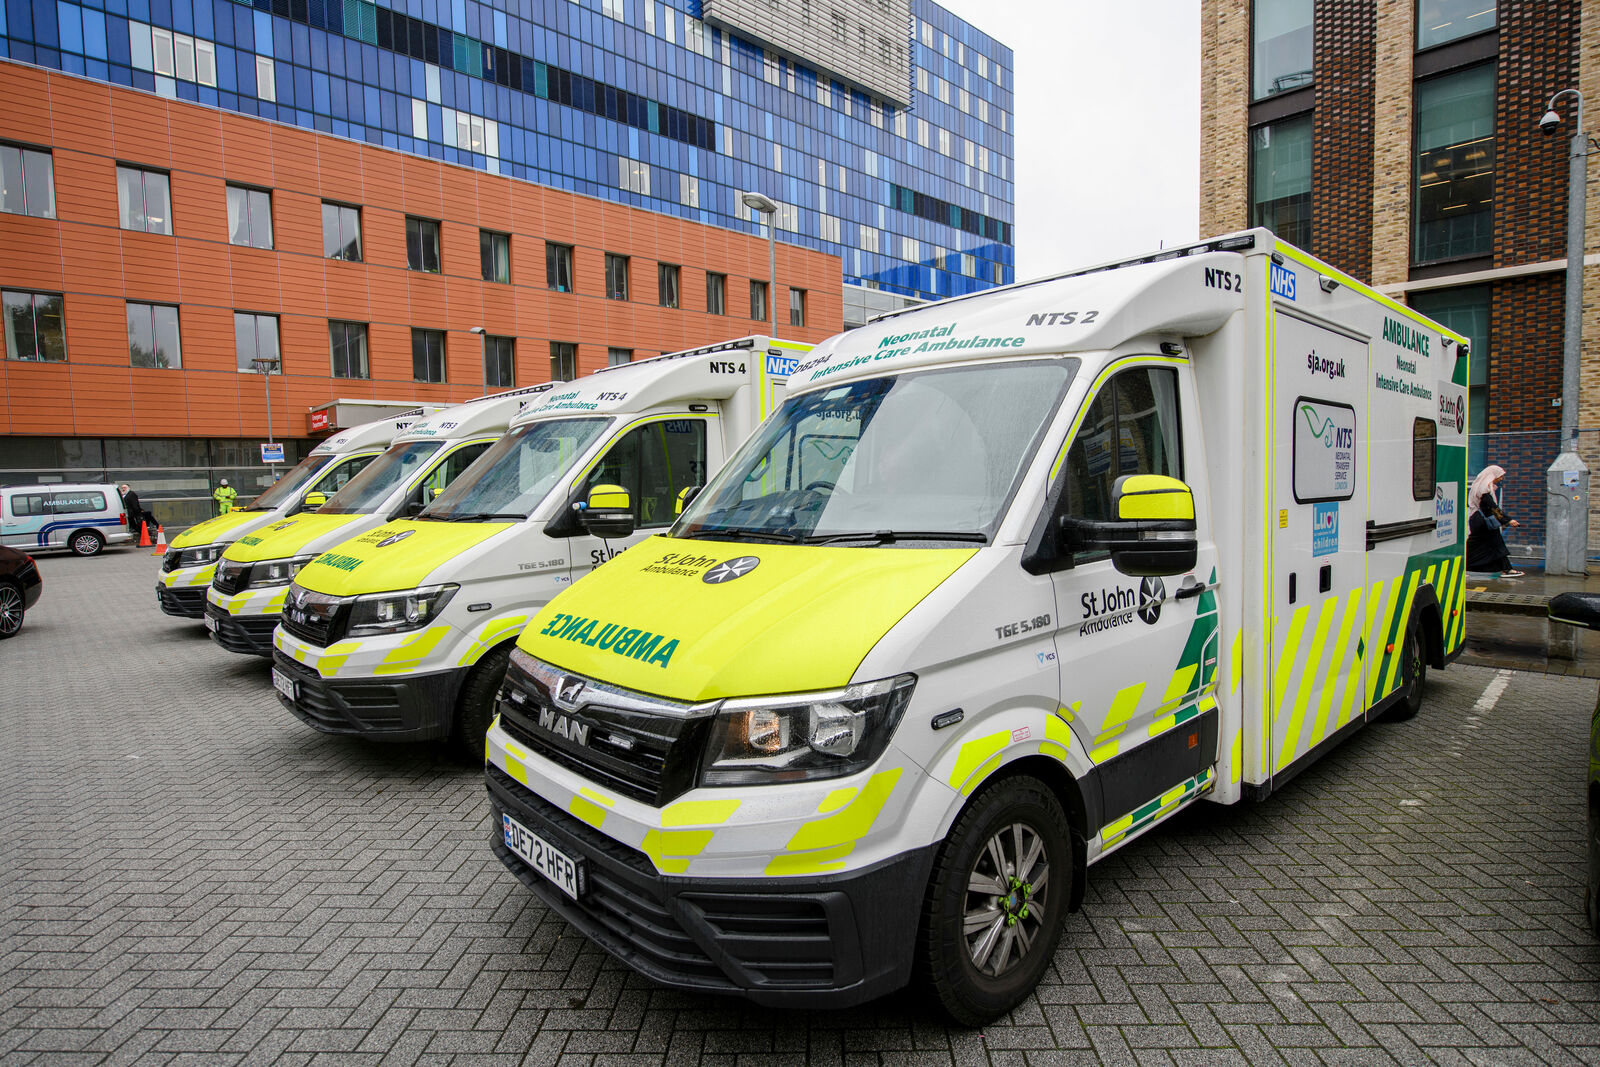 Row of ambulances outside The Royal London